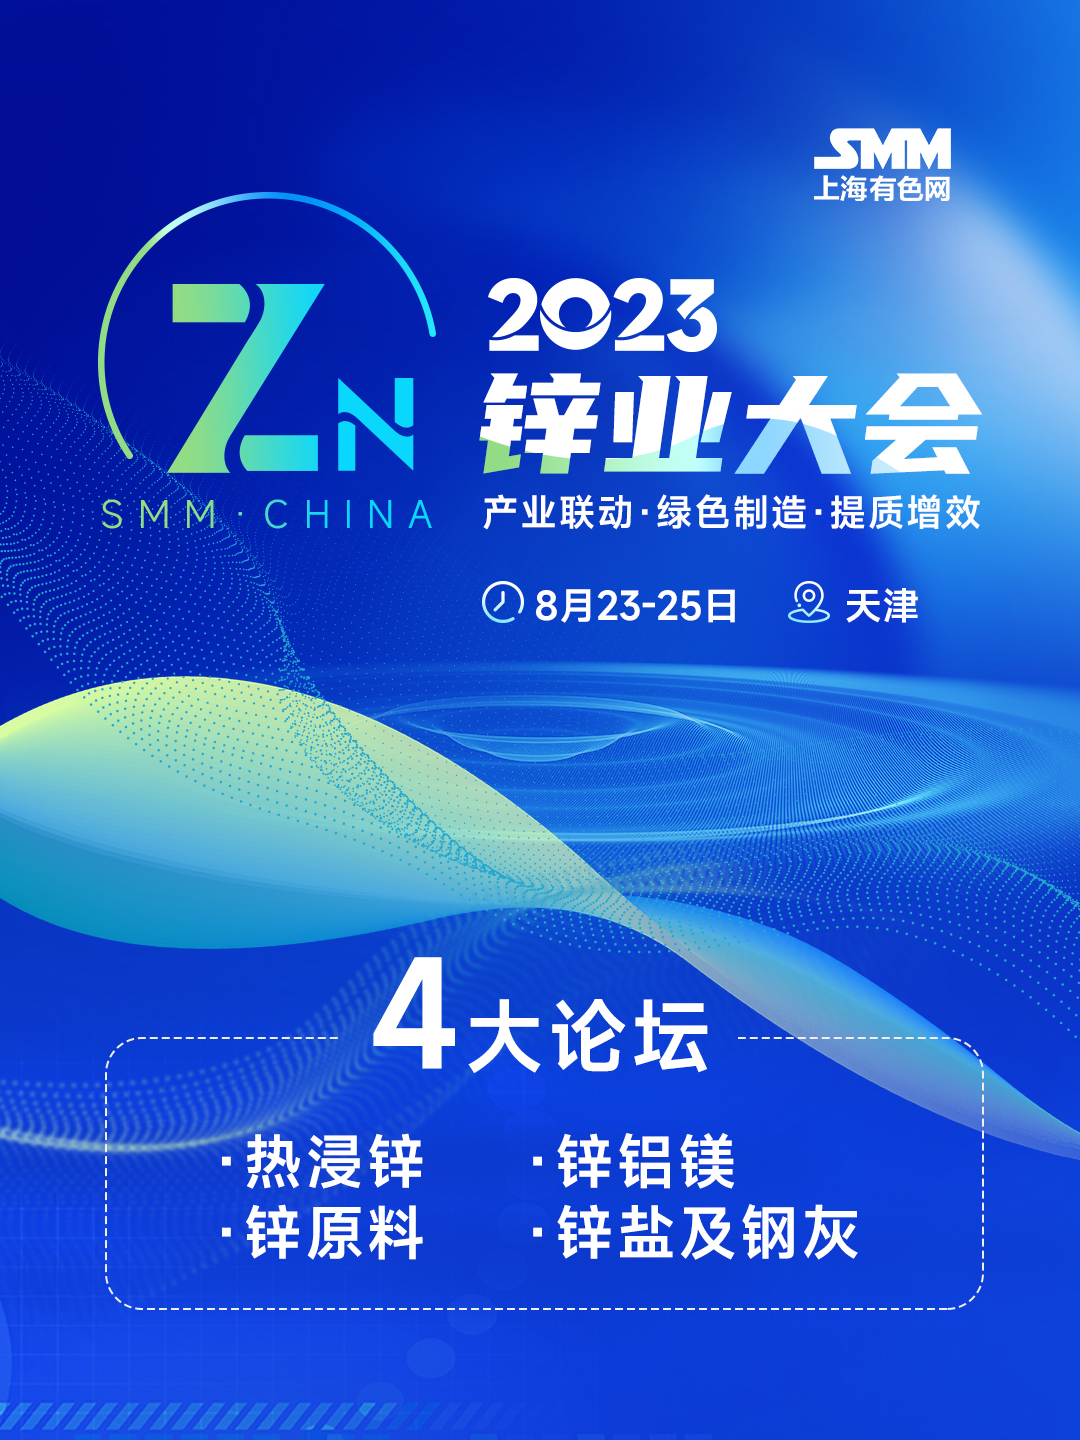 2023年SMM锌业大会